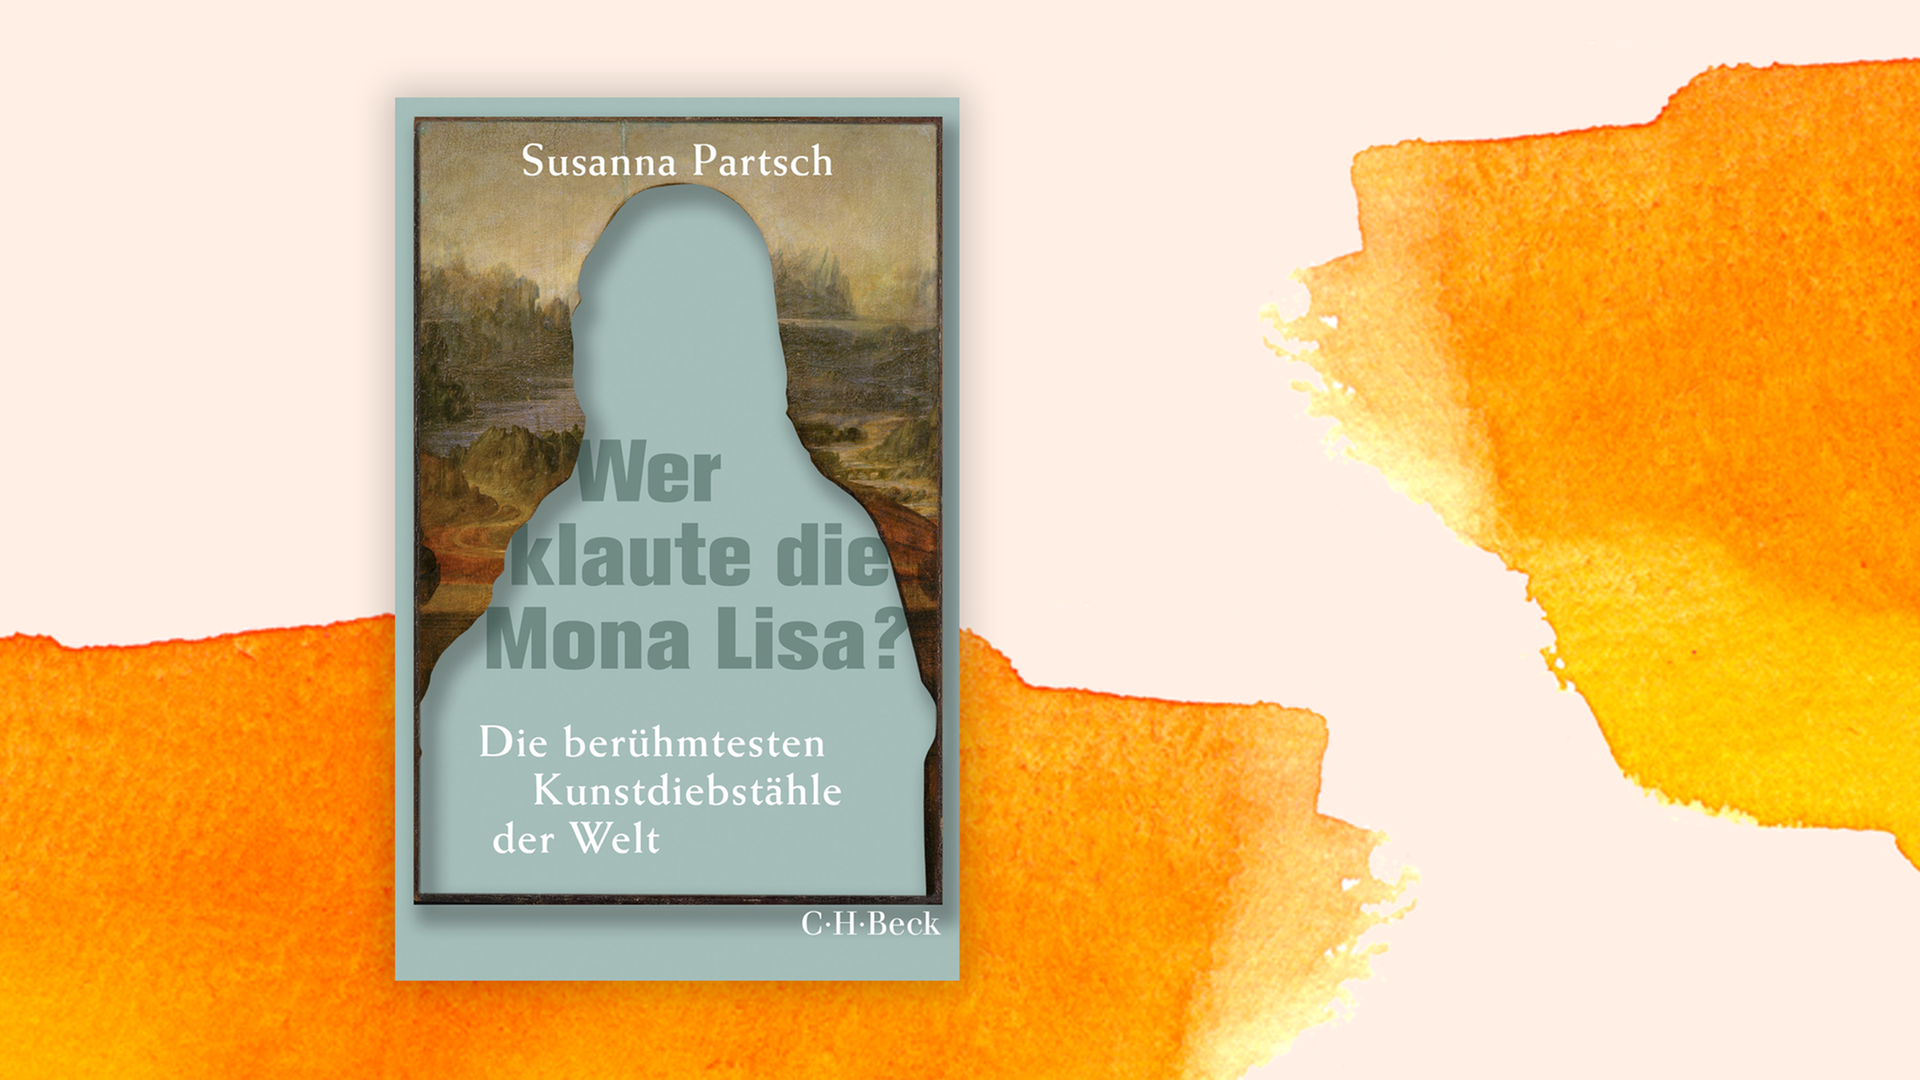 Zu sehen ist das Cover des Buches "Wer klaute die Mona Lisa?" von Susanna Partsch.